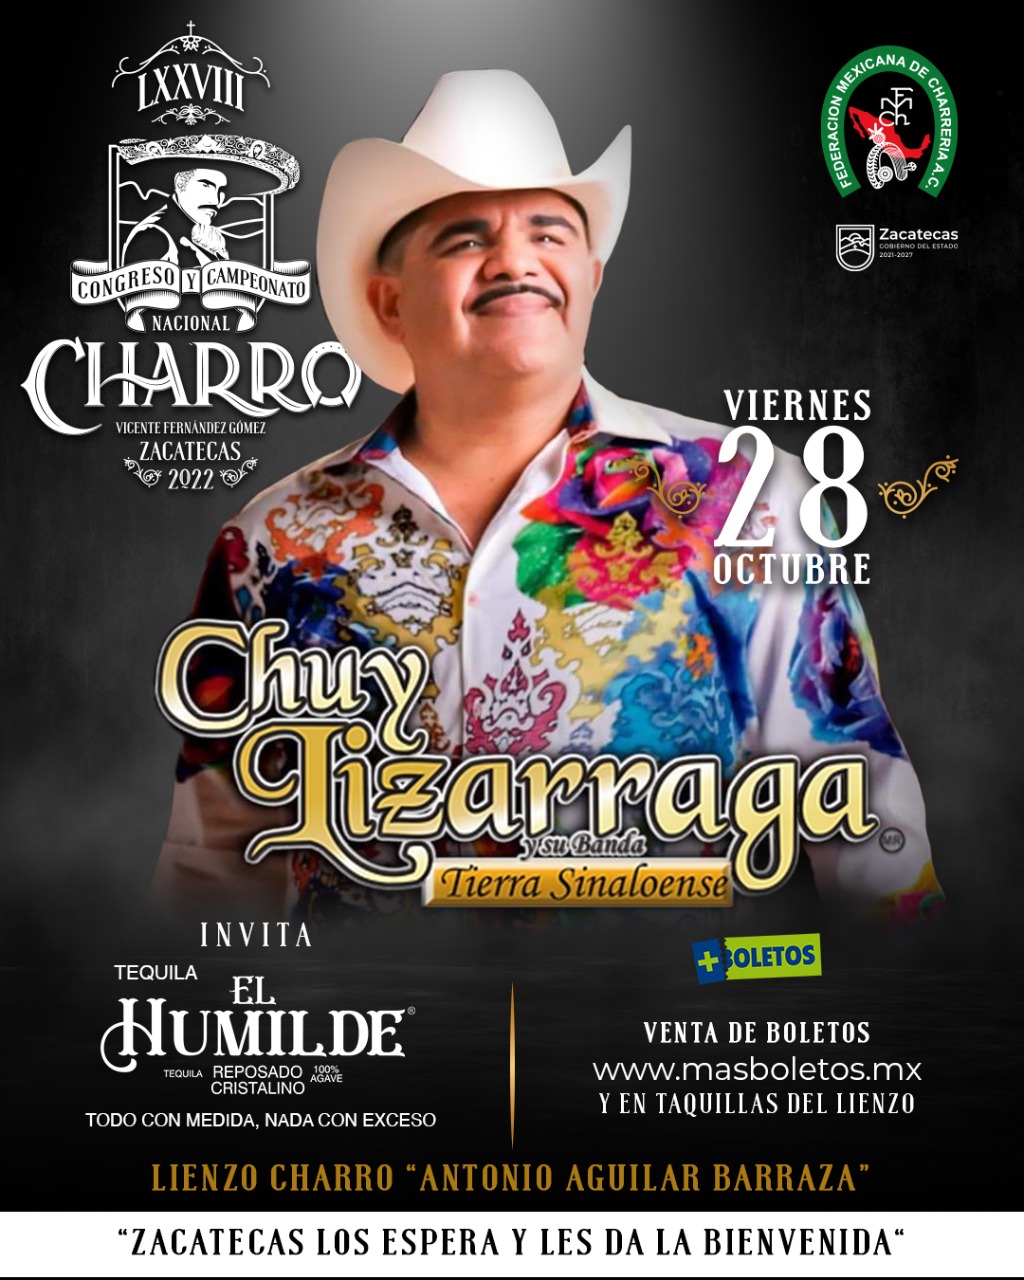 El próximo 28 de octubre se celebrará el concierto del artista «Chuy» Lizárraga